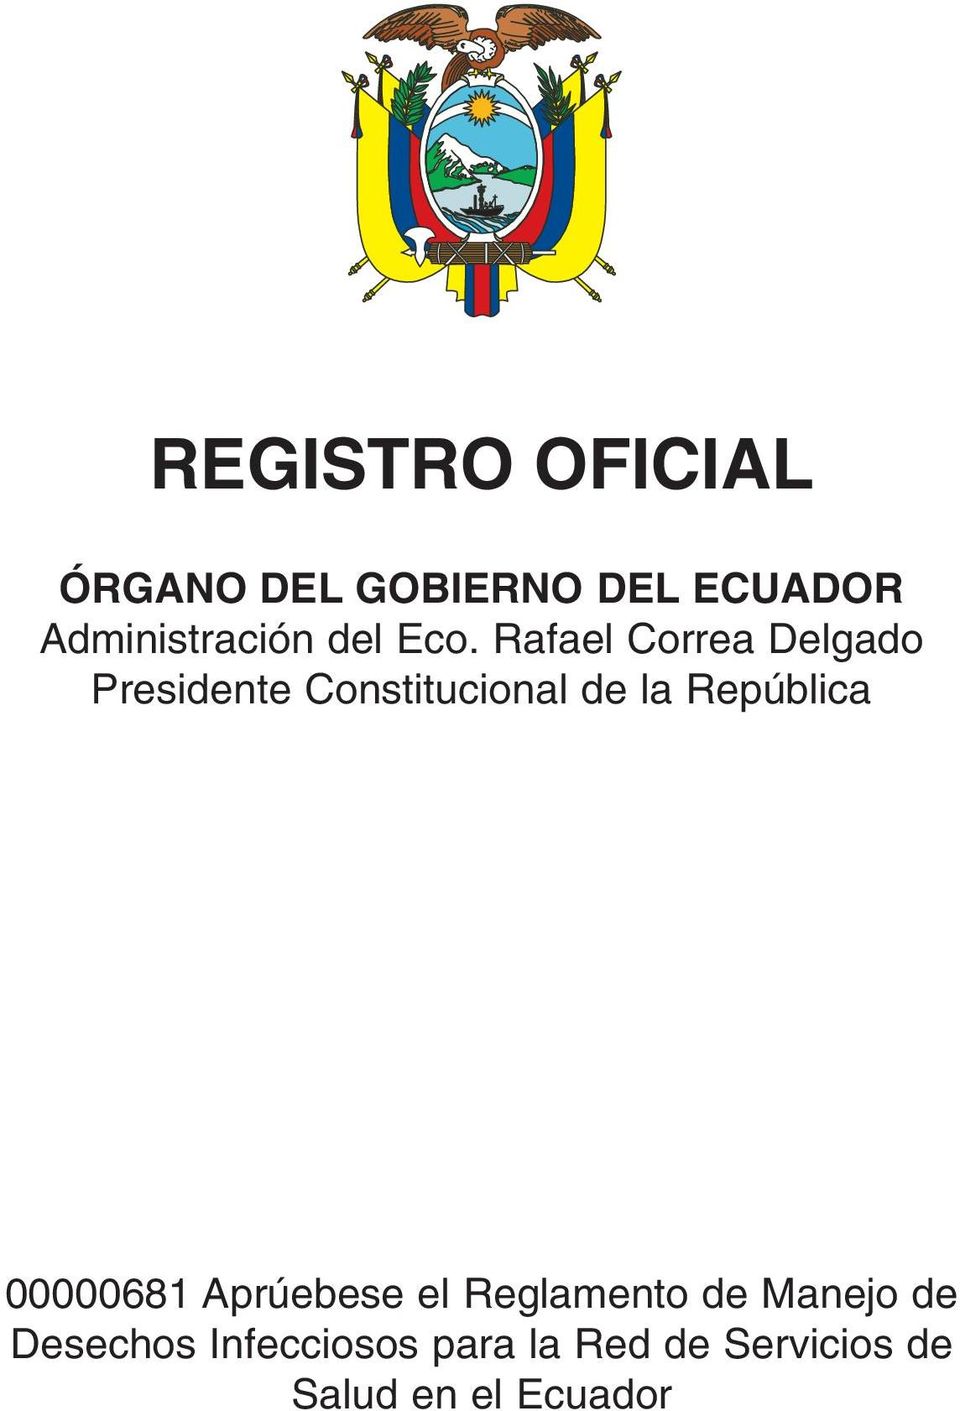 Rafael Correa Delgado Presidente Constitucional de la